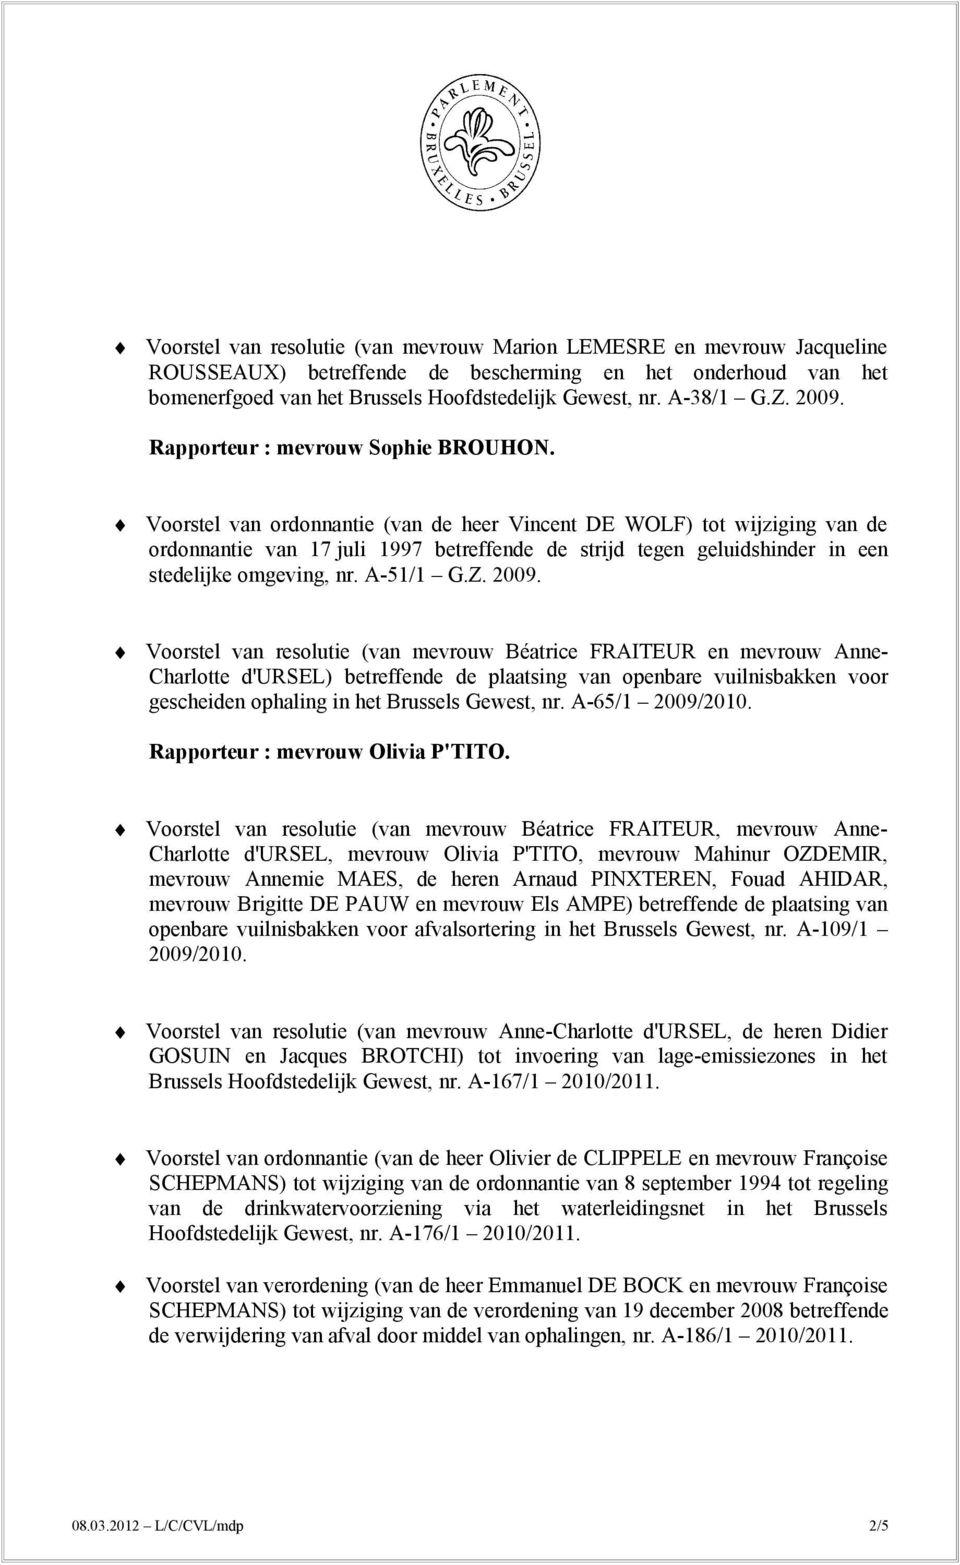 Voorstel van ordonnantie (van de heer Vincent DE WOLF) tot wijziging van de ordonnantie van 17 juli 1997 betreffende de strijd tegen geluidshinder in een stedelijke omgeving, nr. A-51/1 G.Z. 2009.